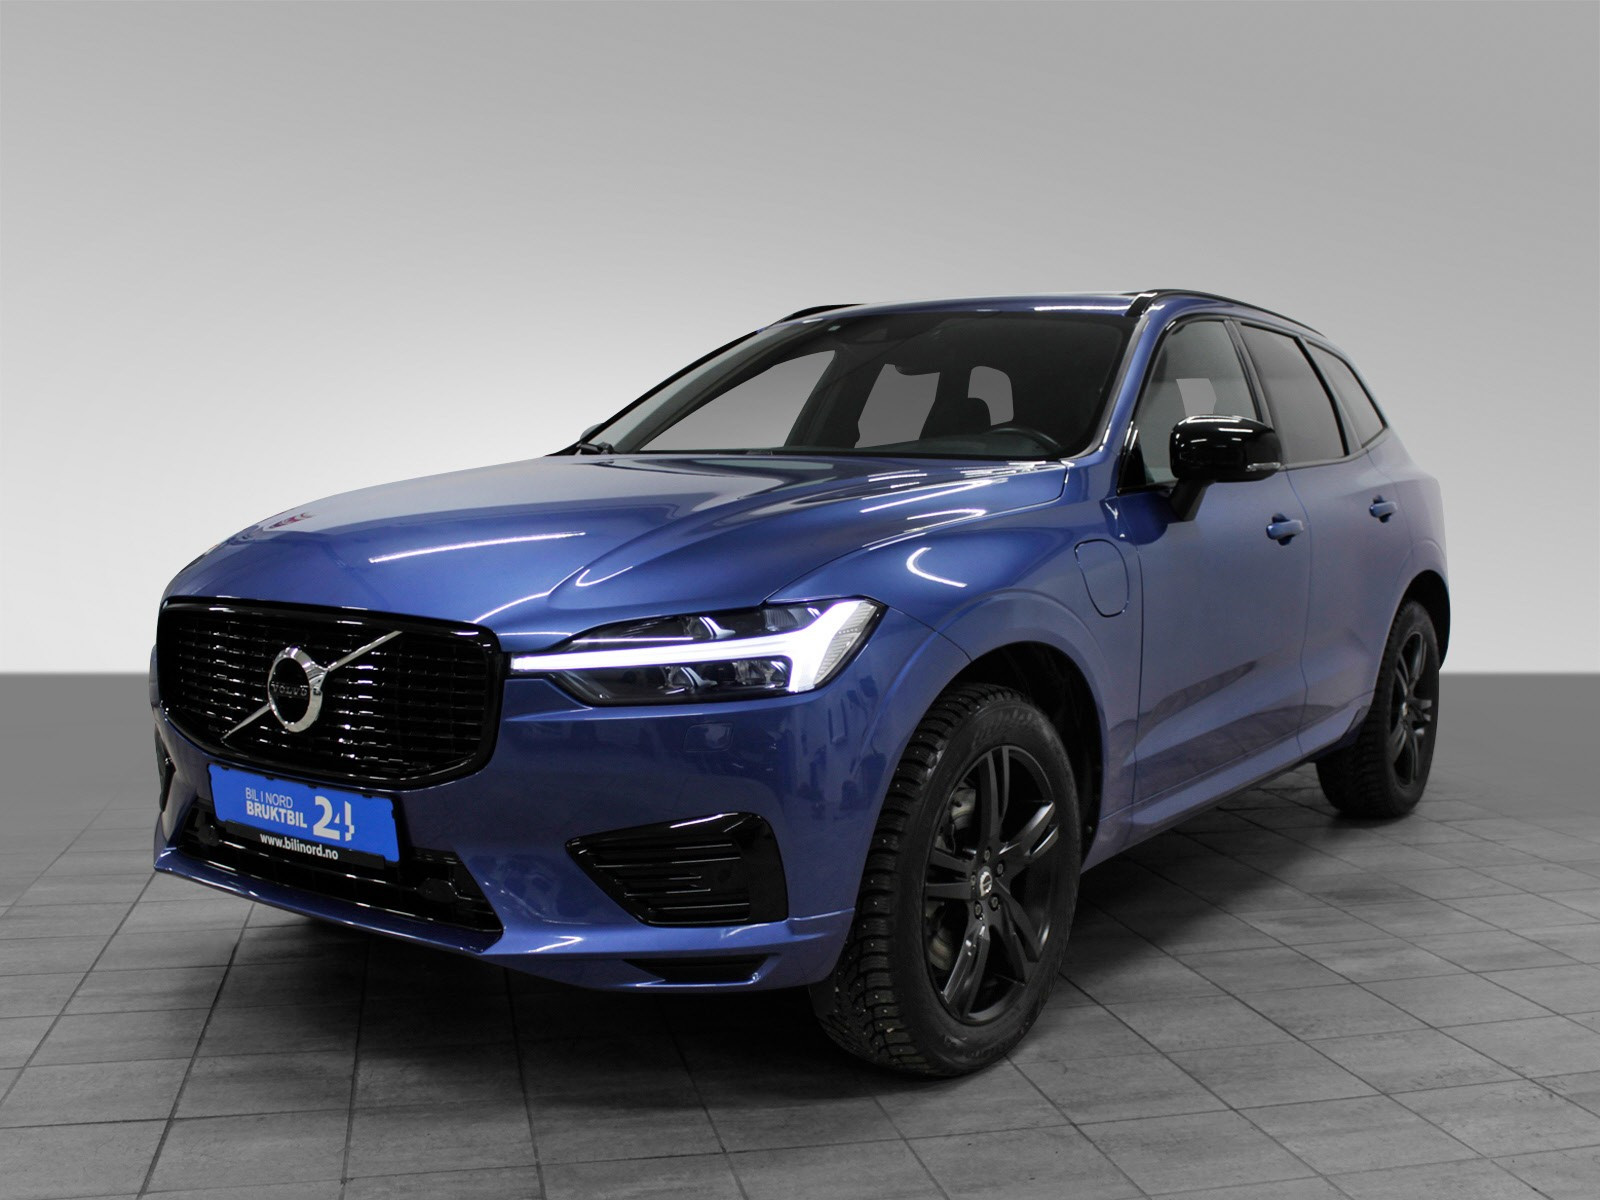 Bursting Blue er Volvo`s desidert fineste farge, om du spør undertegnede.